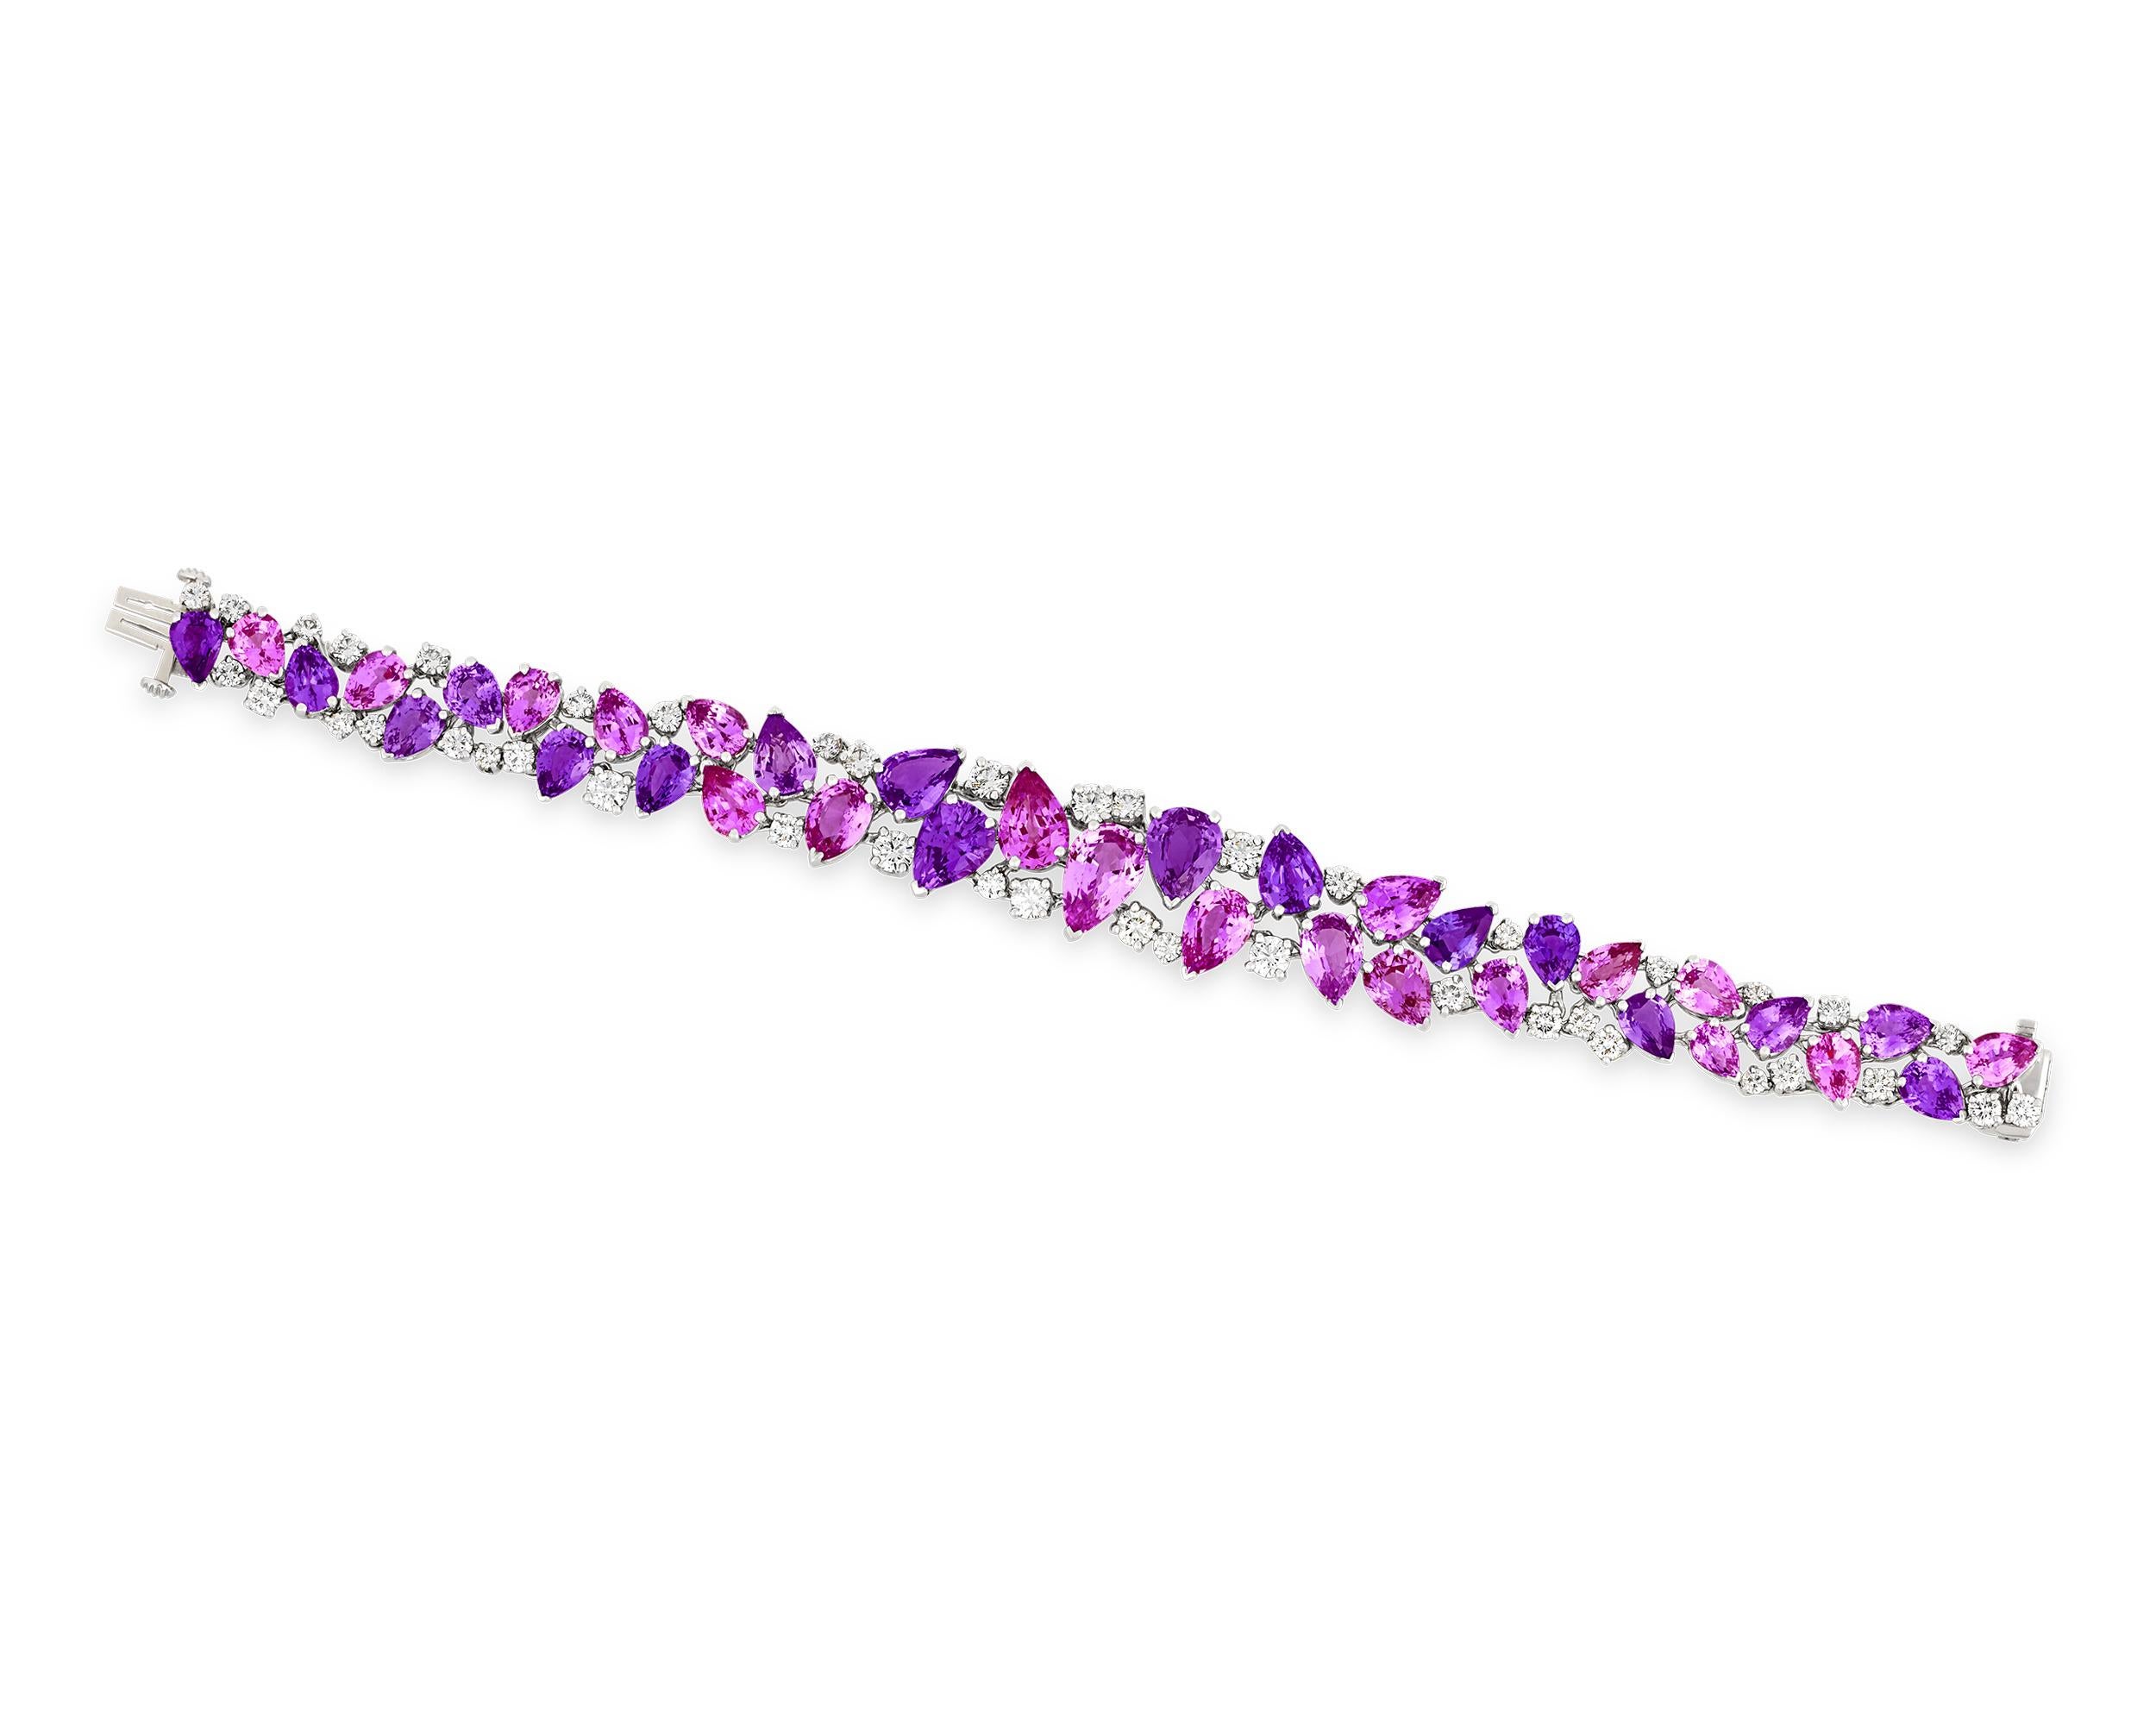 Dieses vom renommierten amerikanischen Juwelier Oscar Heyman gefertigte Armband besteht aus sechsunddreißig perfekt aufeinander abgestimmten birnenförmigen rosa und violetten Saphiren. Die romantischen Edelsteine sind vom Gemological Institute of